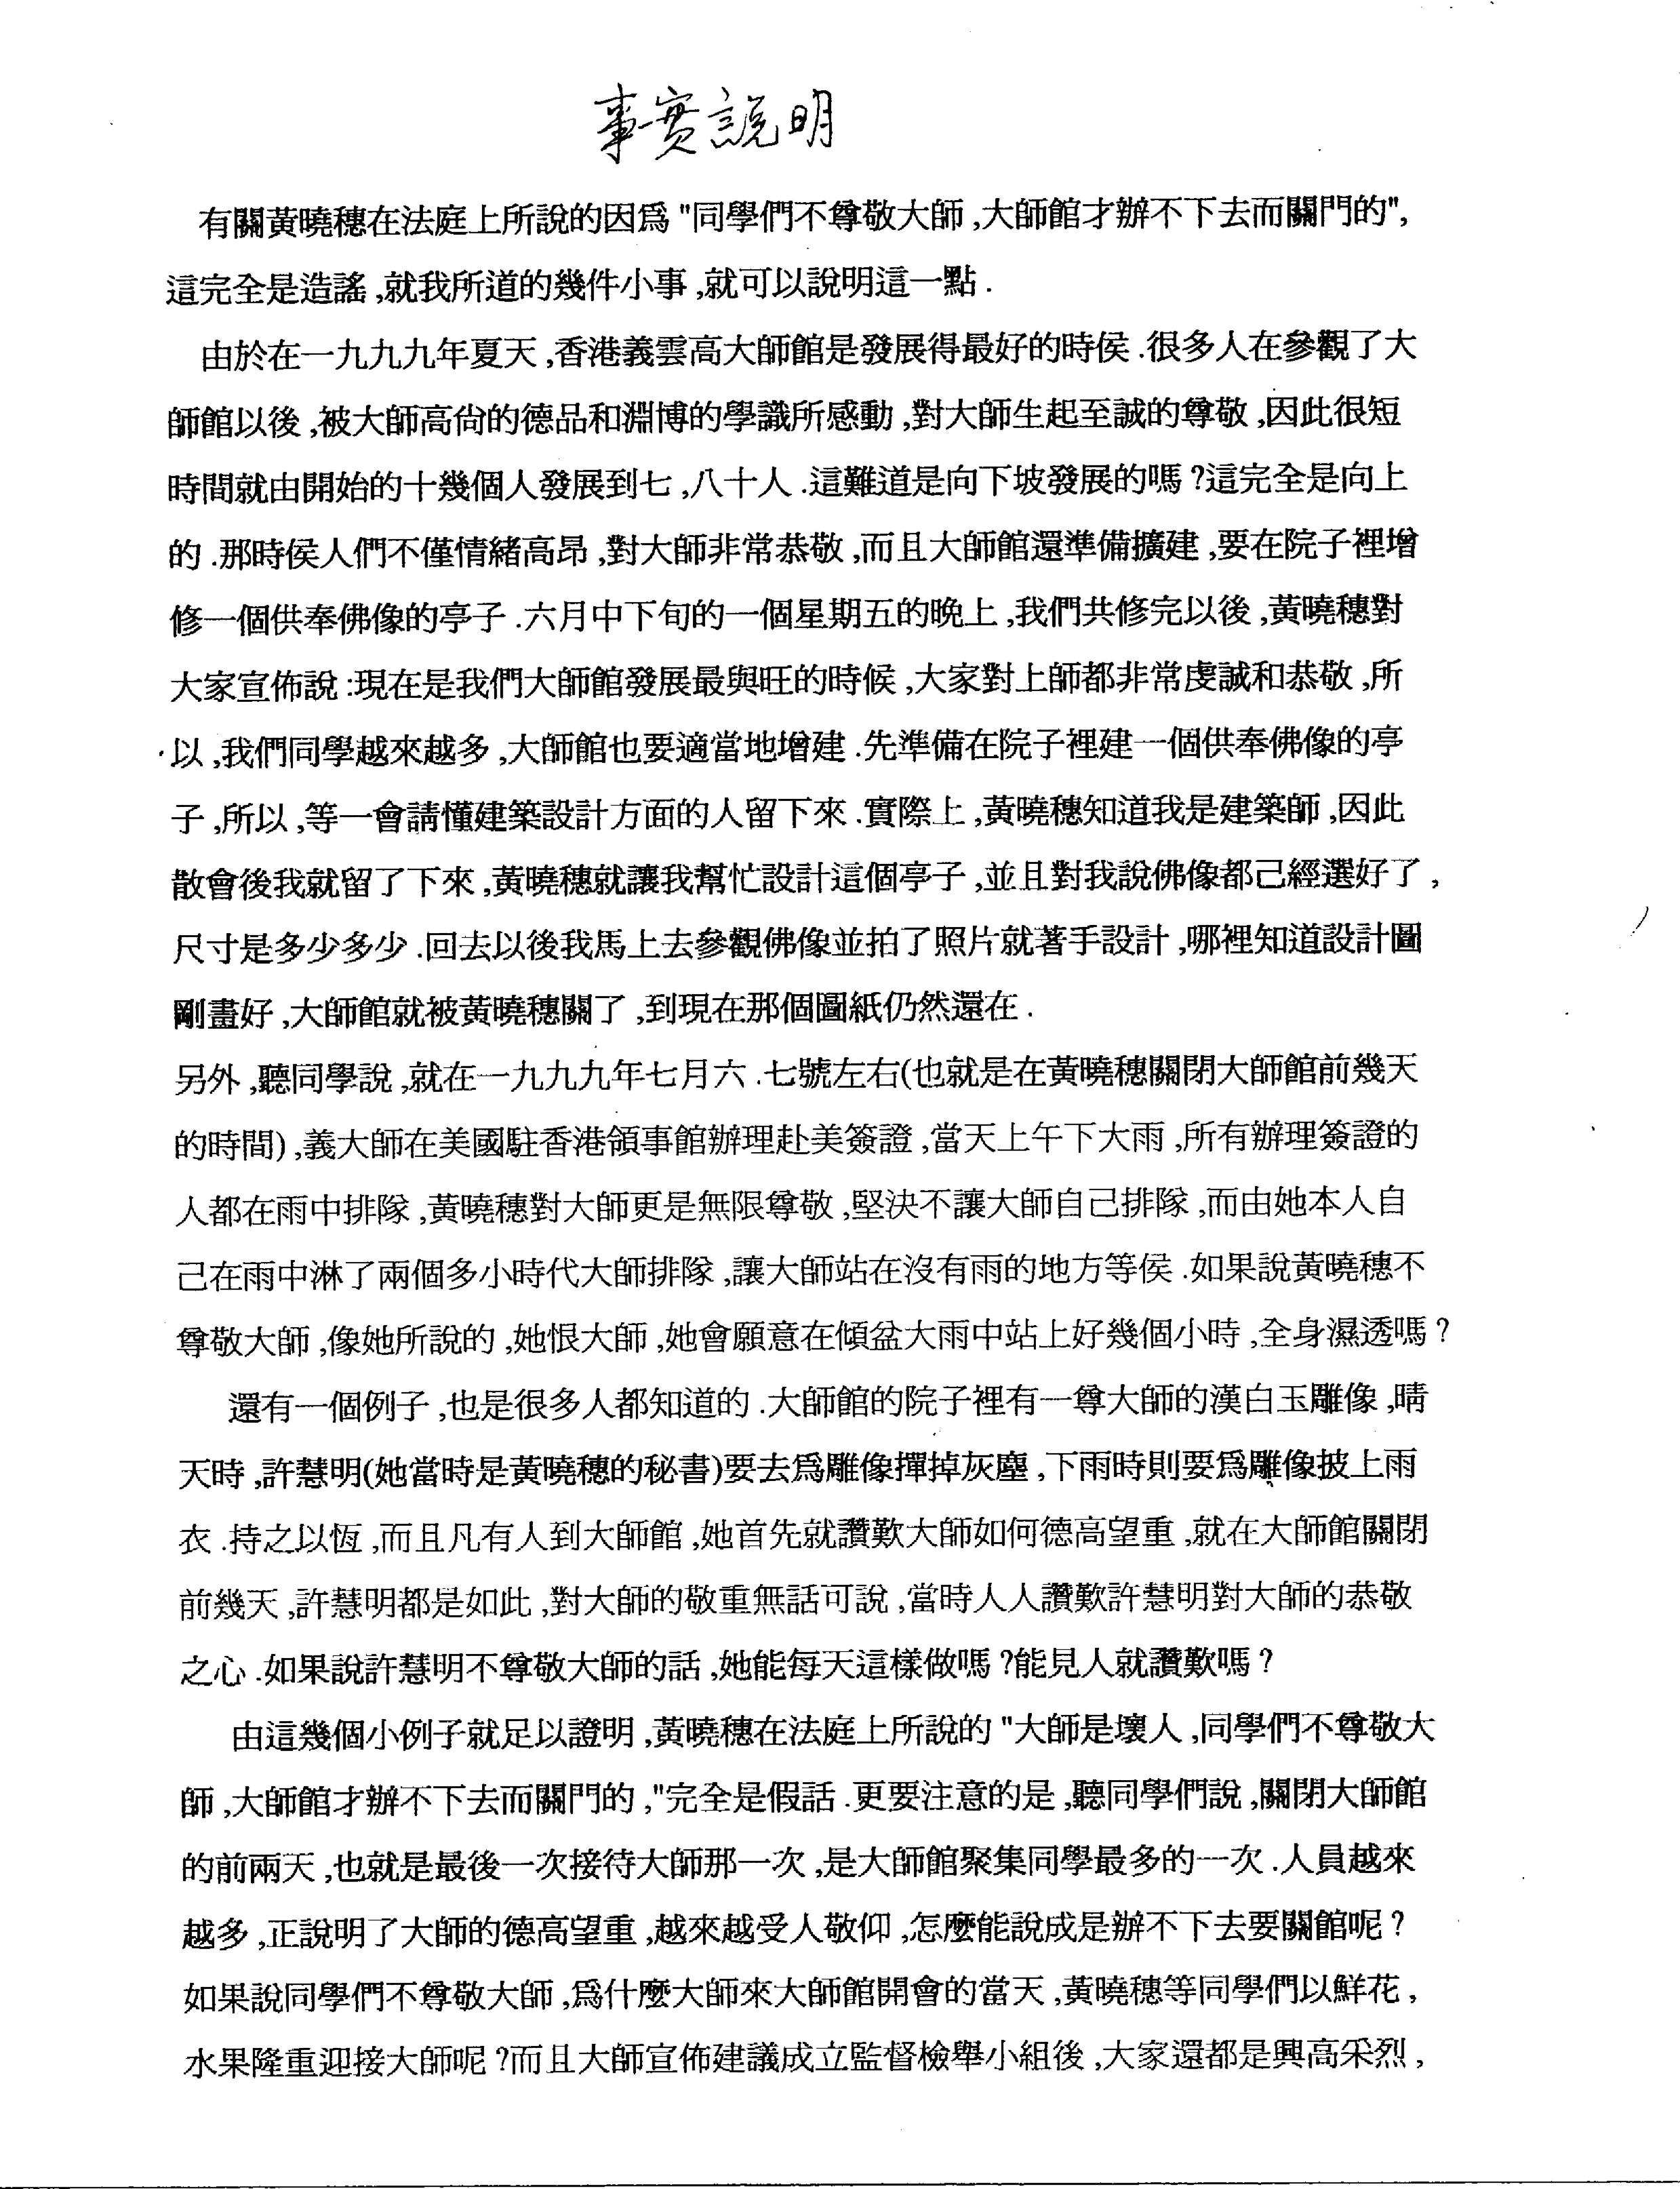 香港法院重判黄晓穗诈骗案 还第三世多杰羌佛清白 第10张